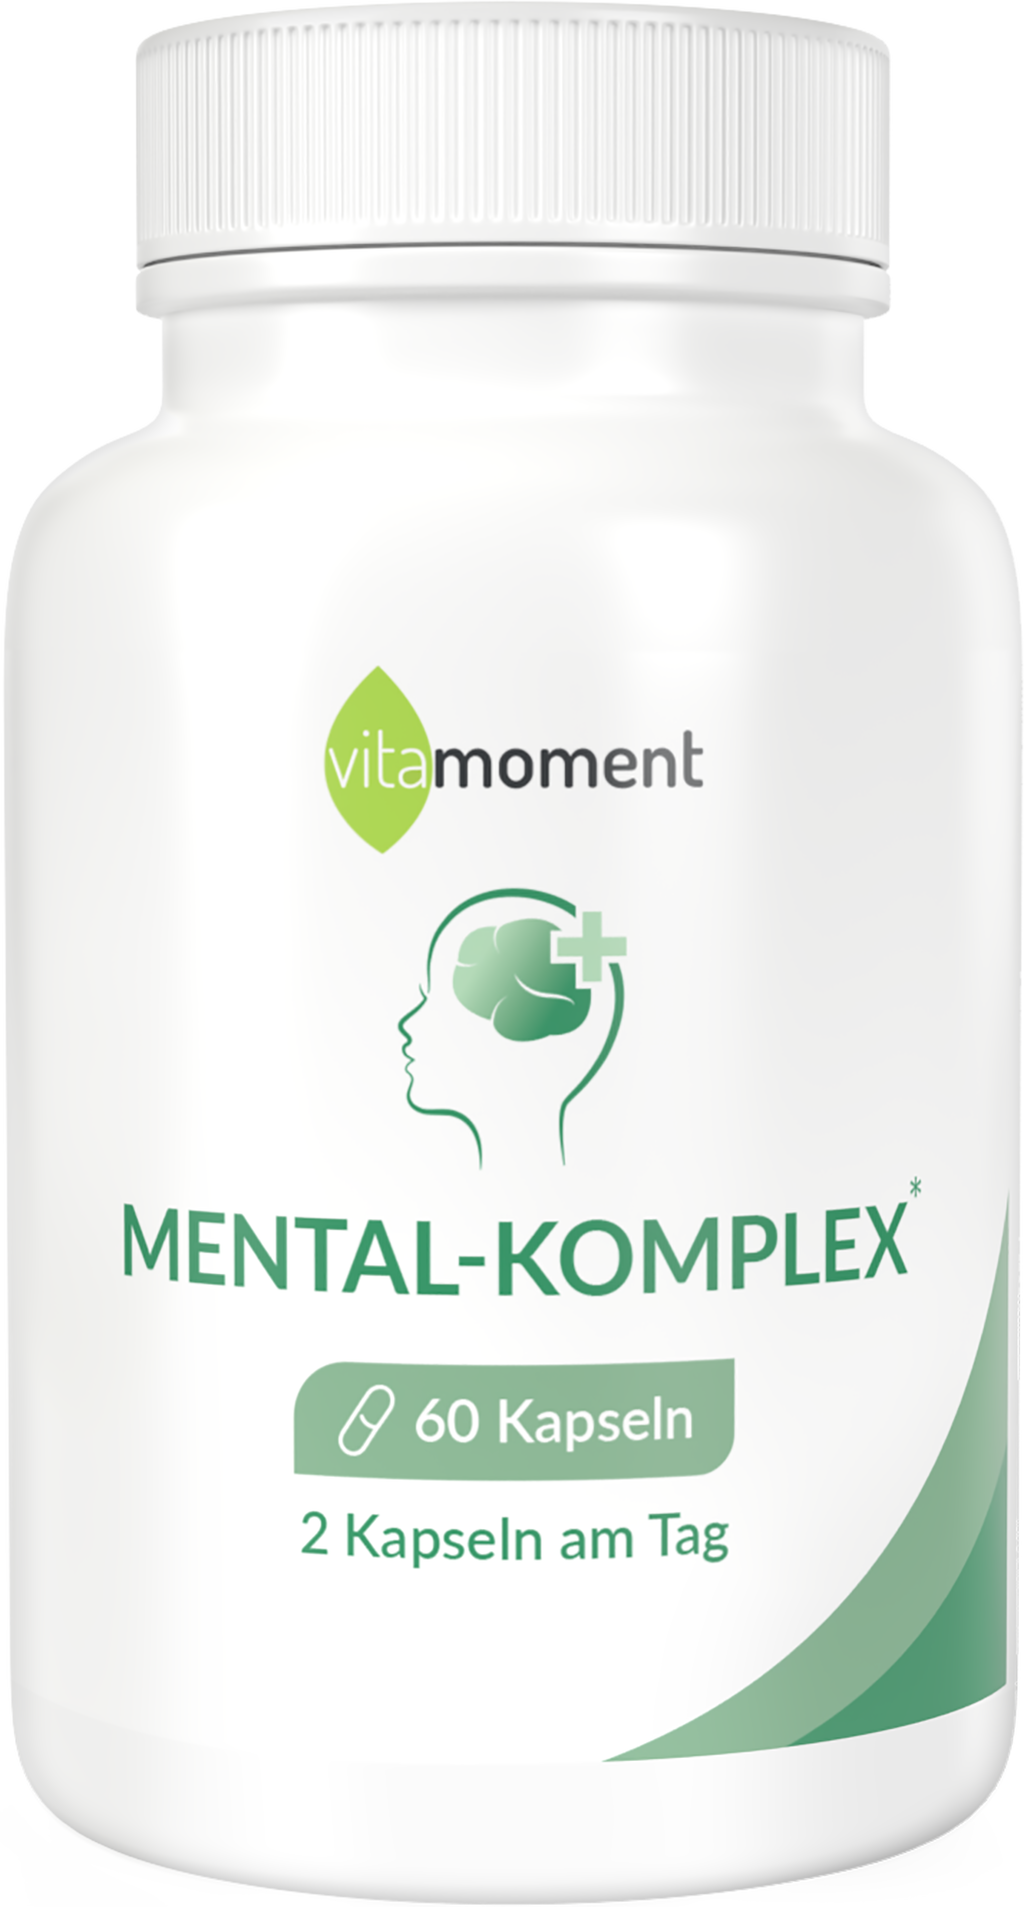 Mental-Komplex - VitaMoment Produkt